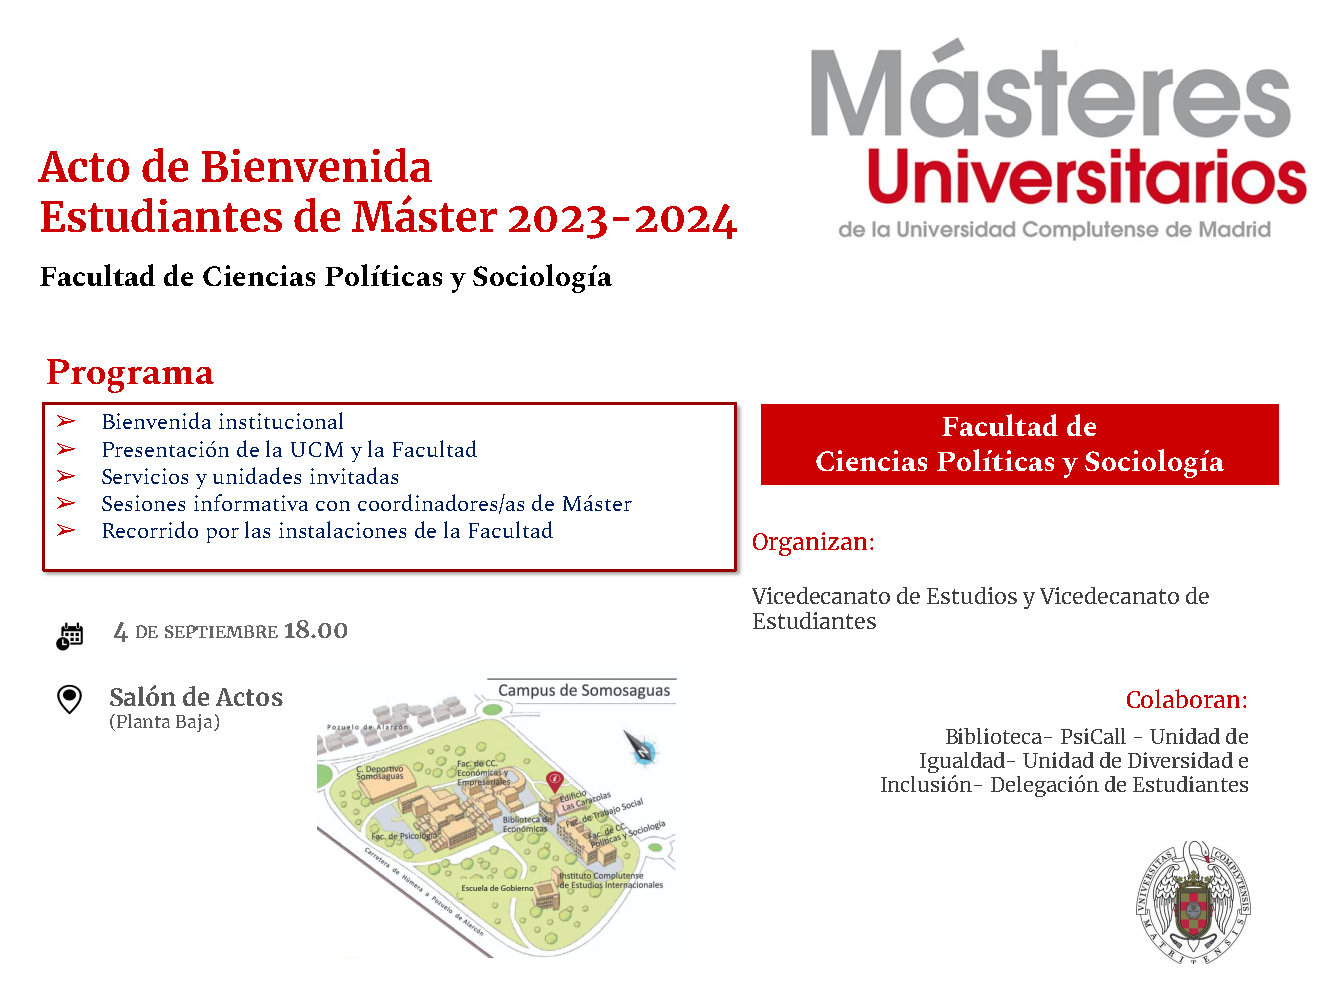 Acto de bienvenida a Estudiantes de Másteres Universitarios 2023-2024